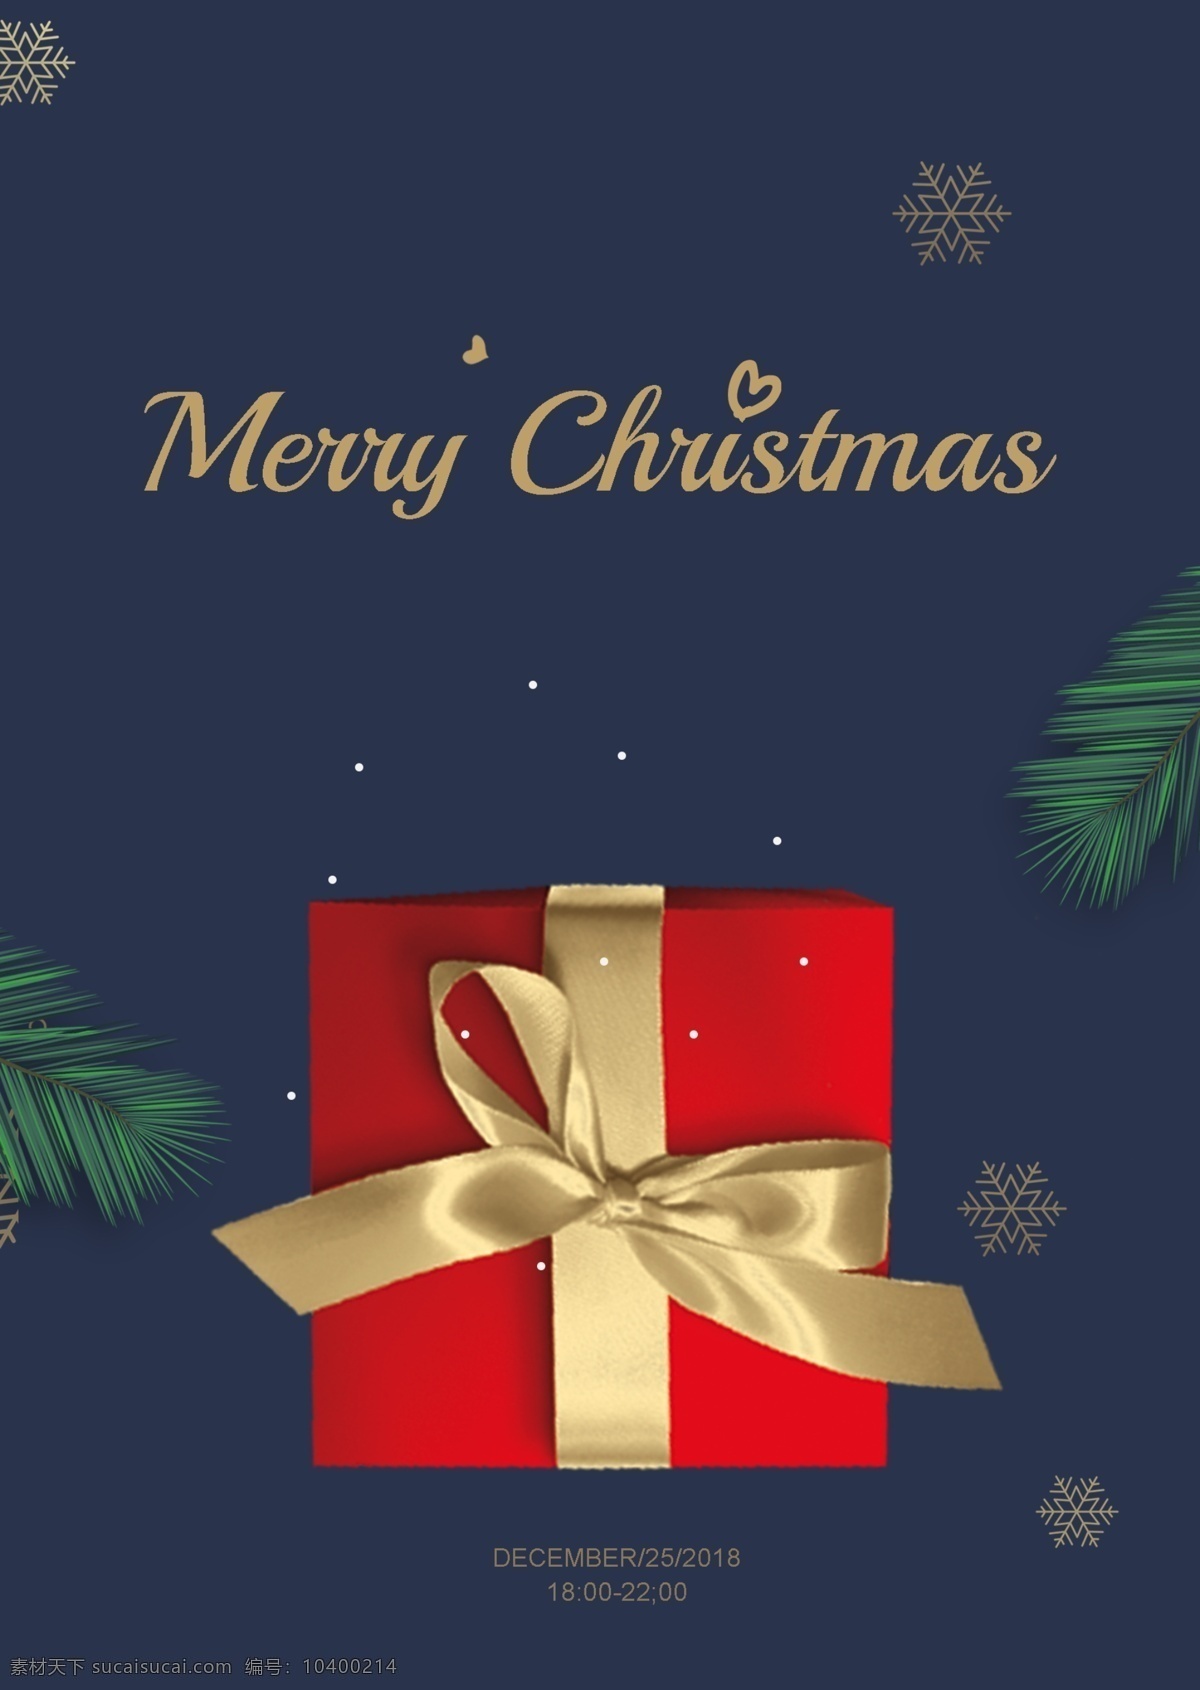 2019 年 黑暗 资深 作家 圣诞节 海报 金 绿色 雪 红色 礼品 松树 叶 圣诞 白色 礼物盒 绿色圣诞装饰 高级 大气 韩国报纸